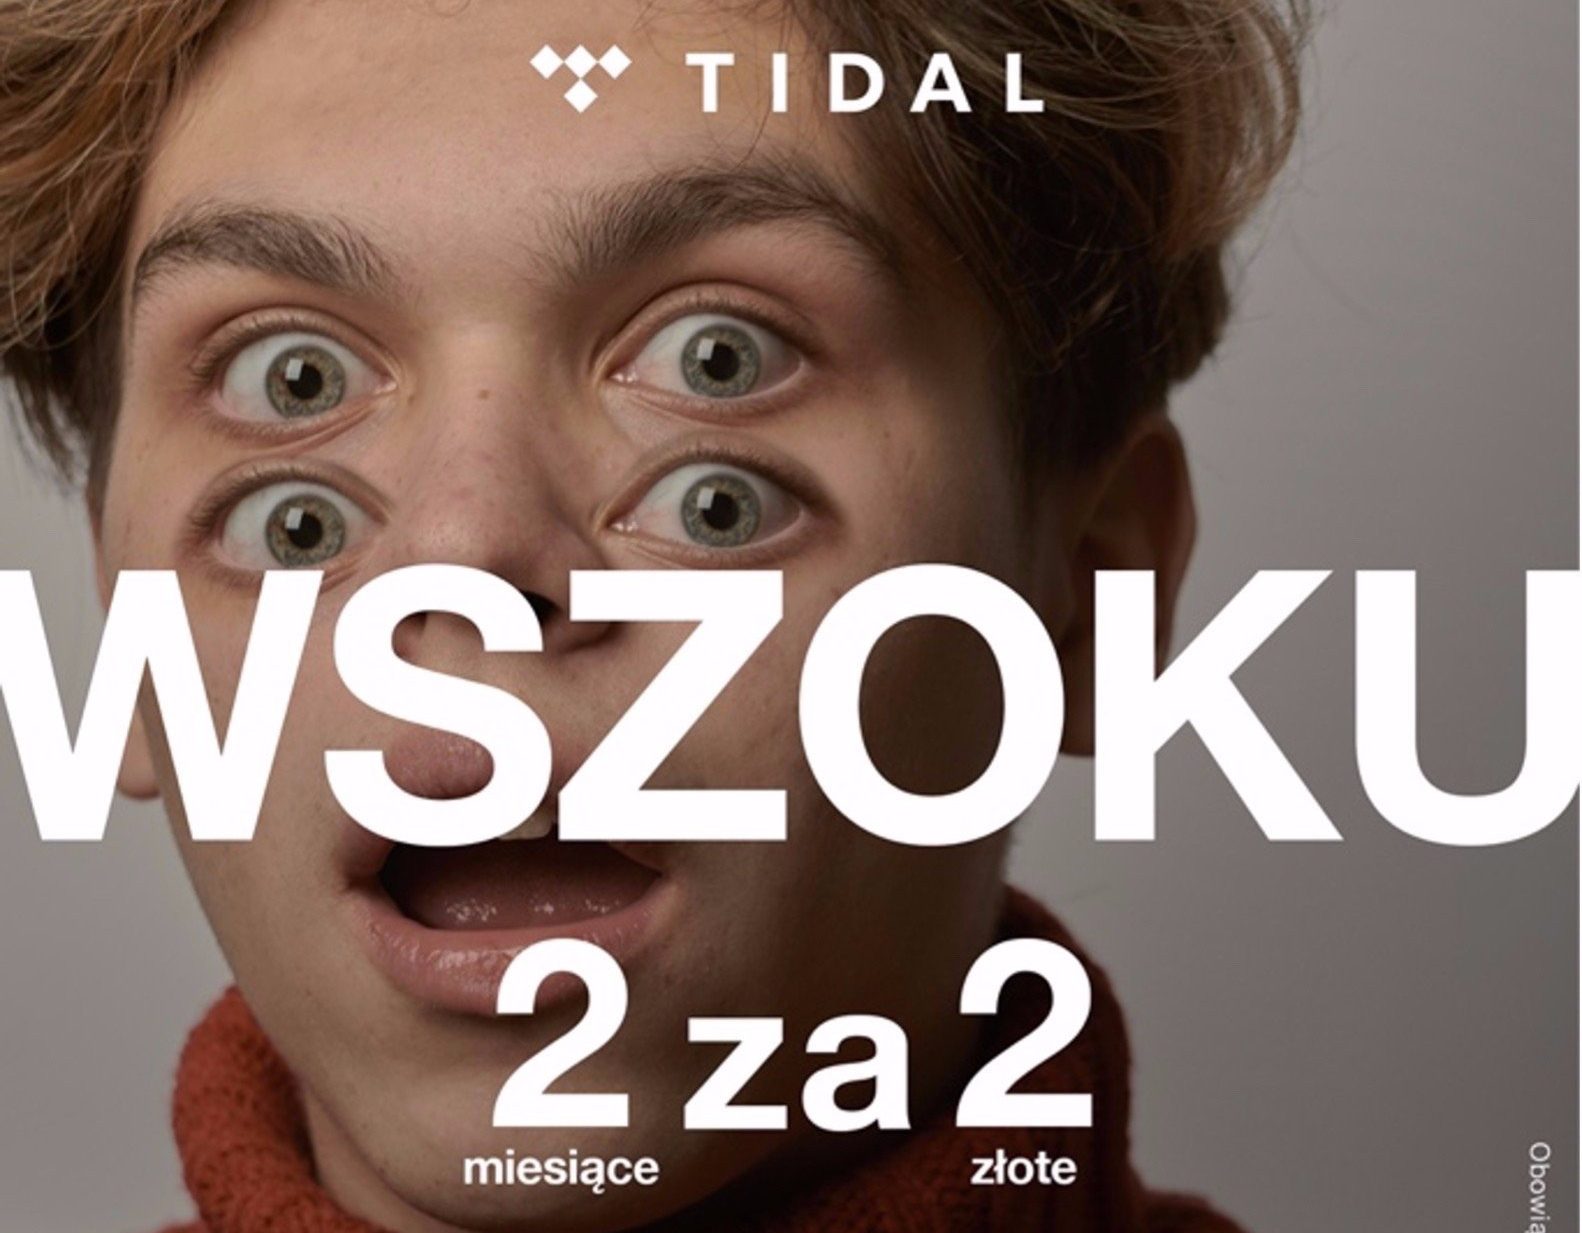 Zugang zu 70 Millionen Songs für 2 Monate für 2 PLN - Tidals profitable Promotion! 351